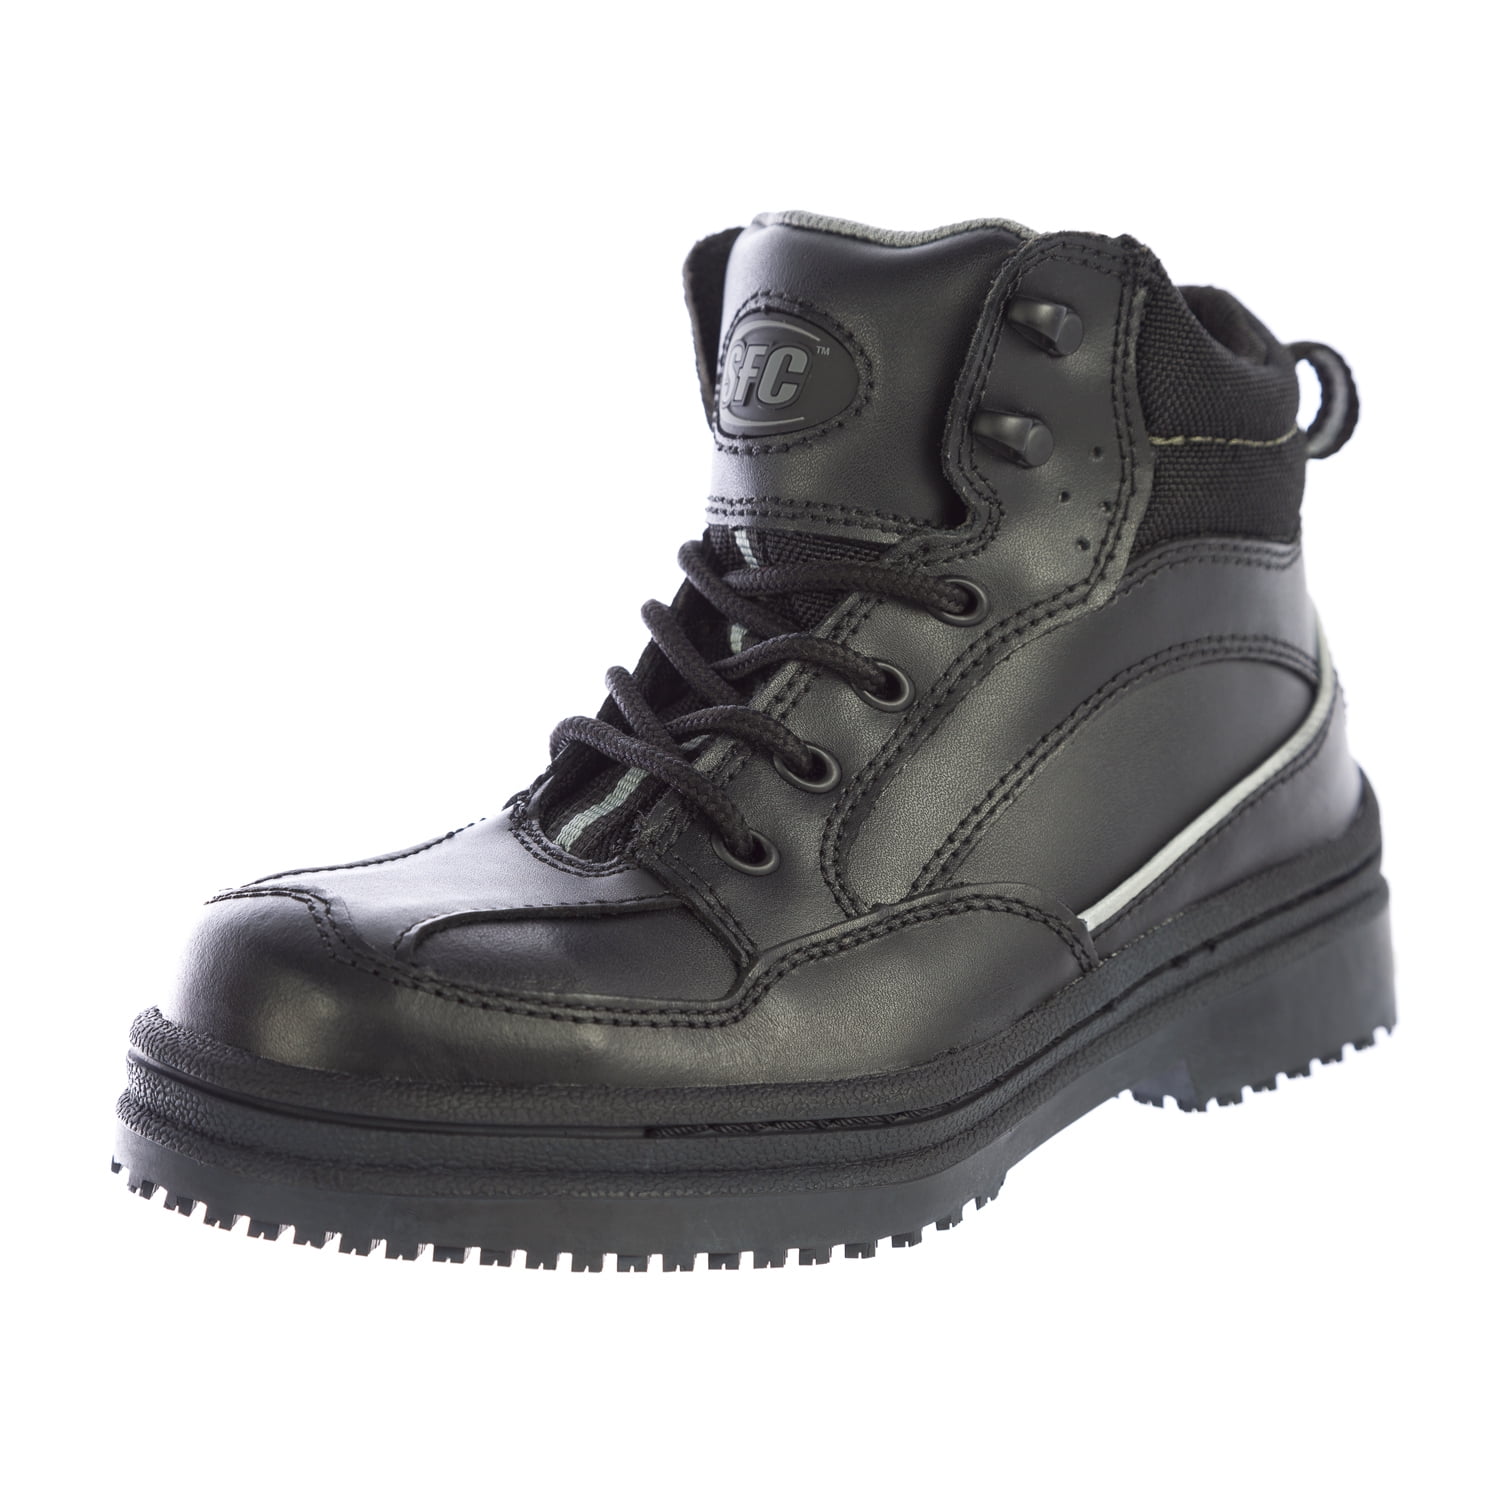 shoes for crews men's boots